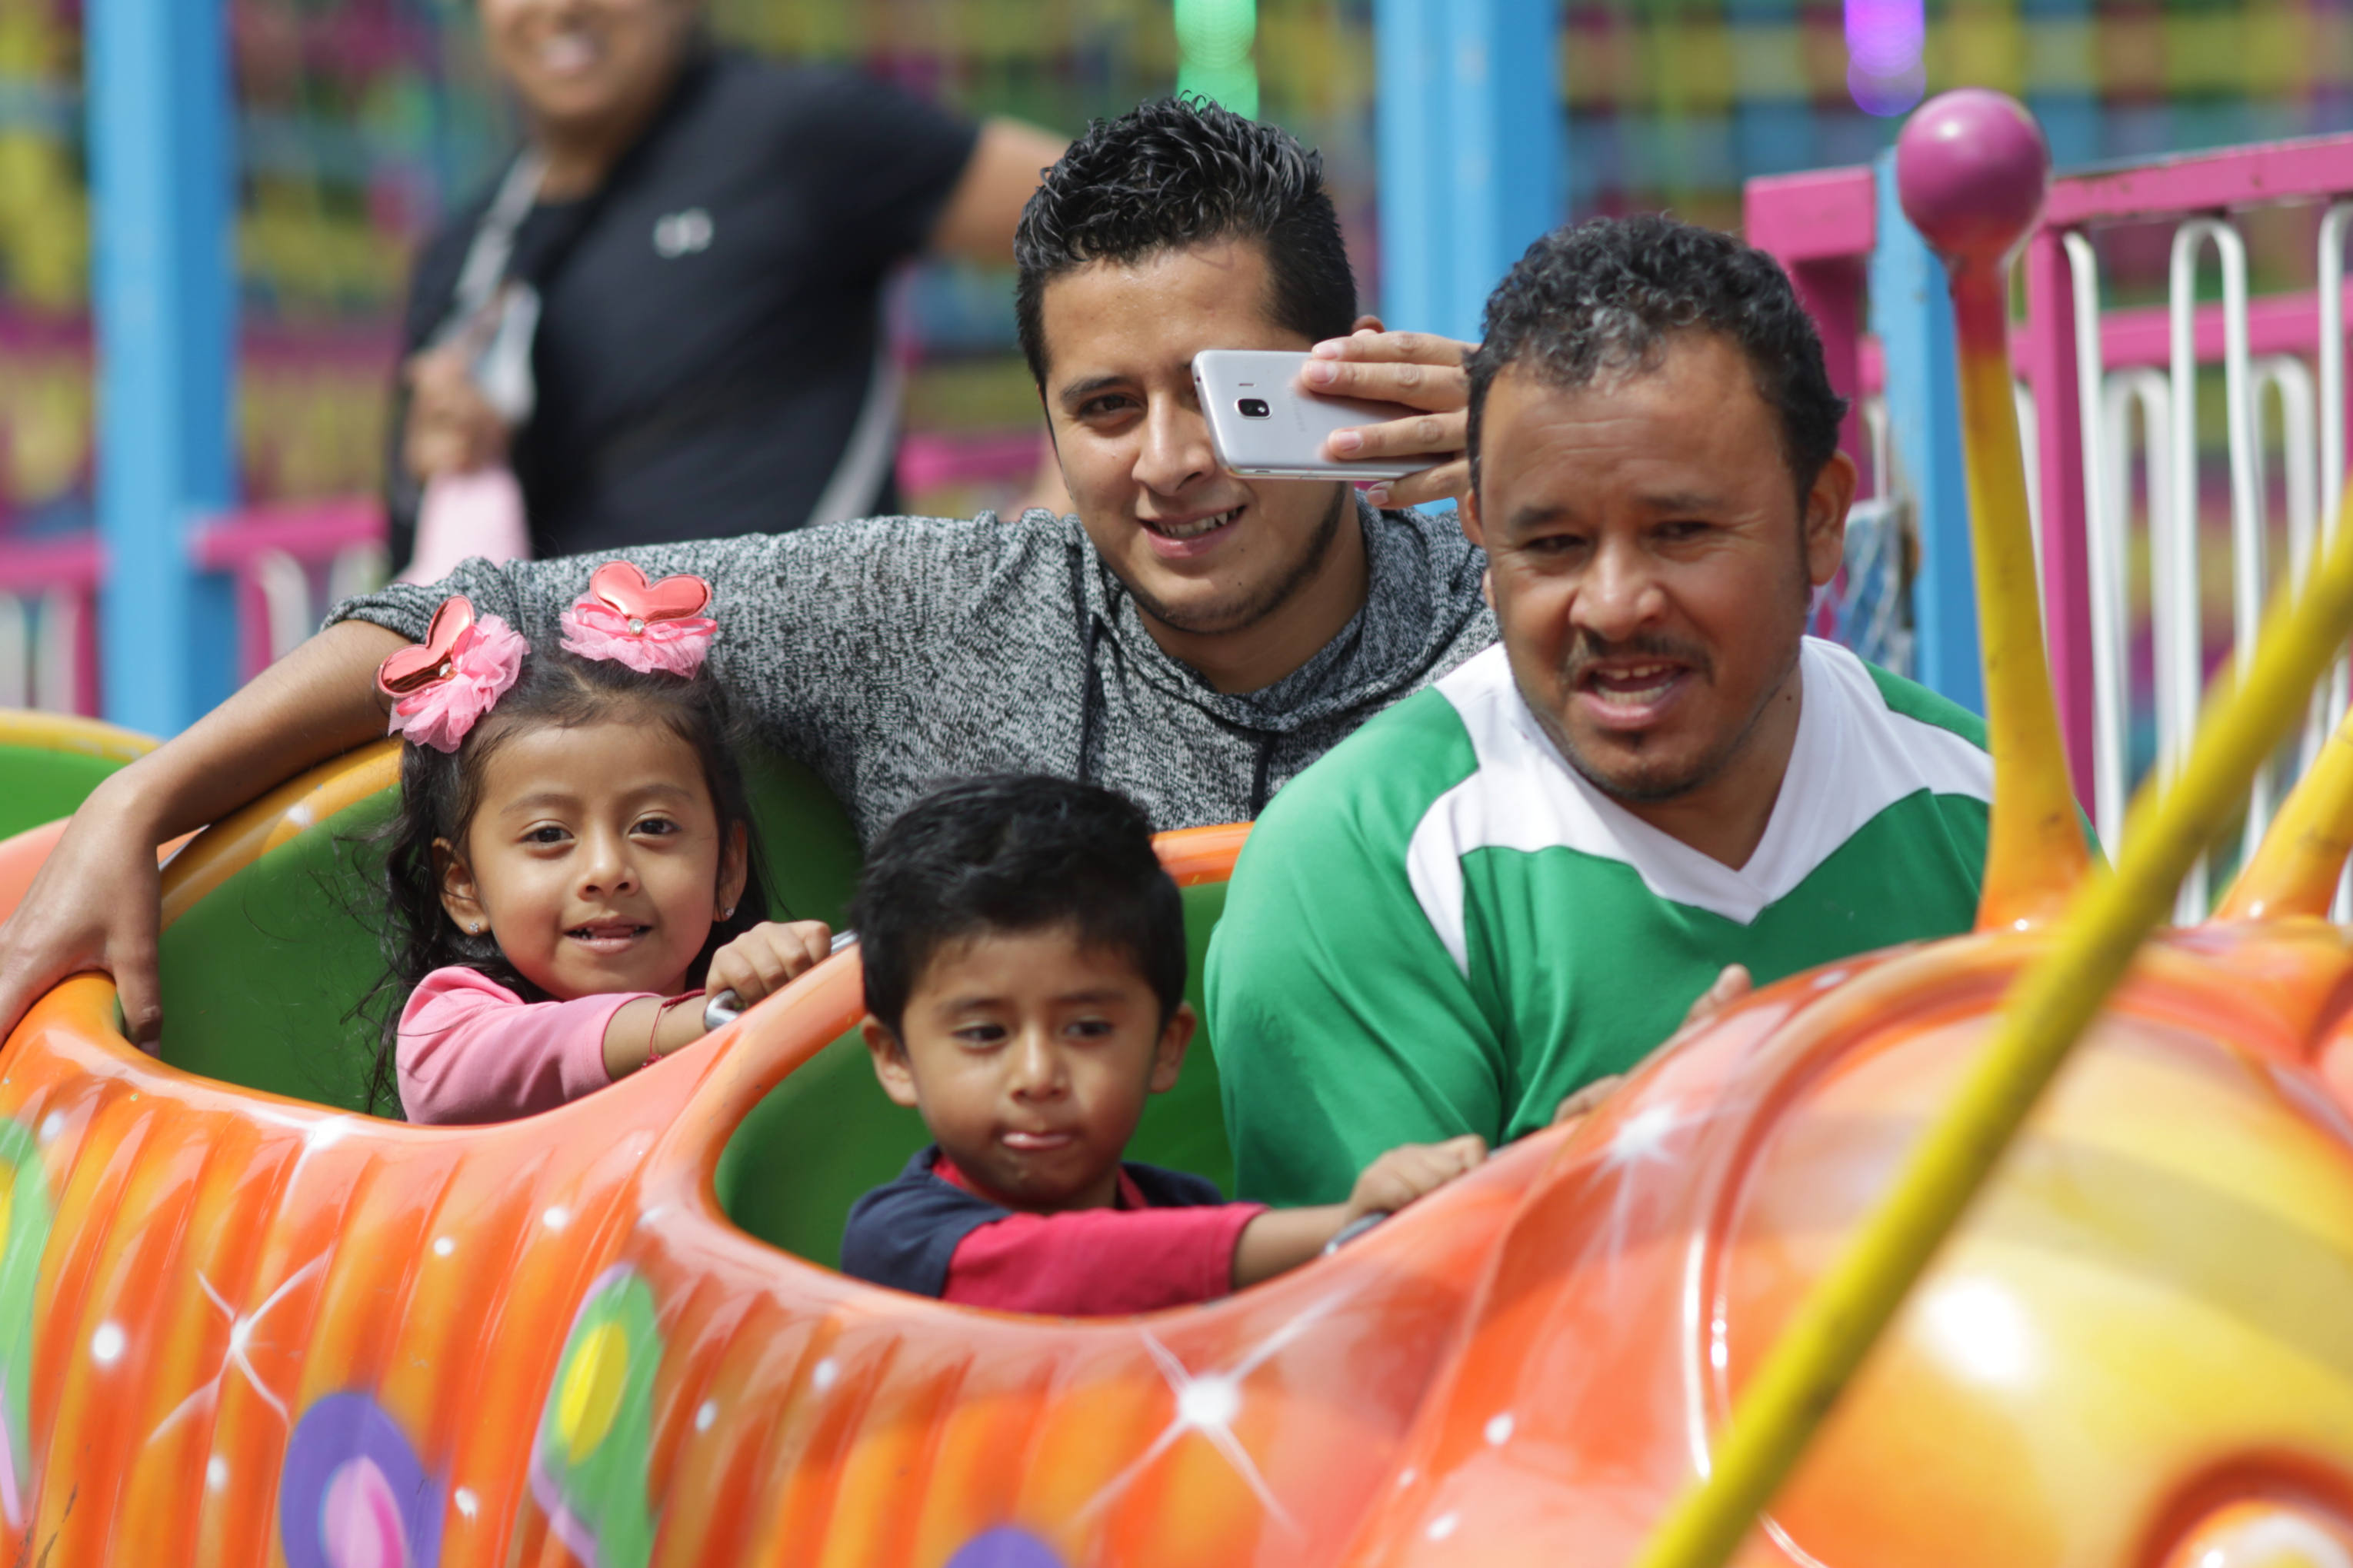 Festejo del Día del Padre costará arriba de los 2 mil pesos: Anpec